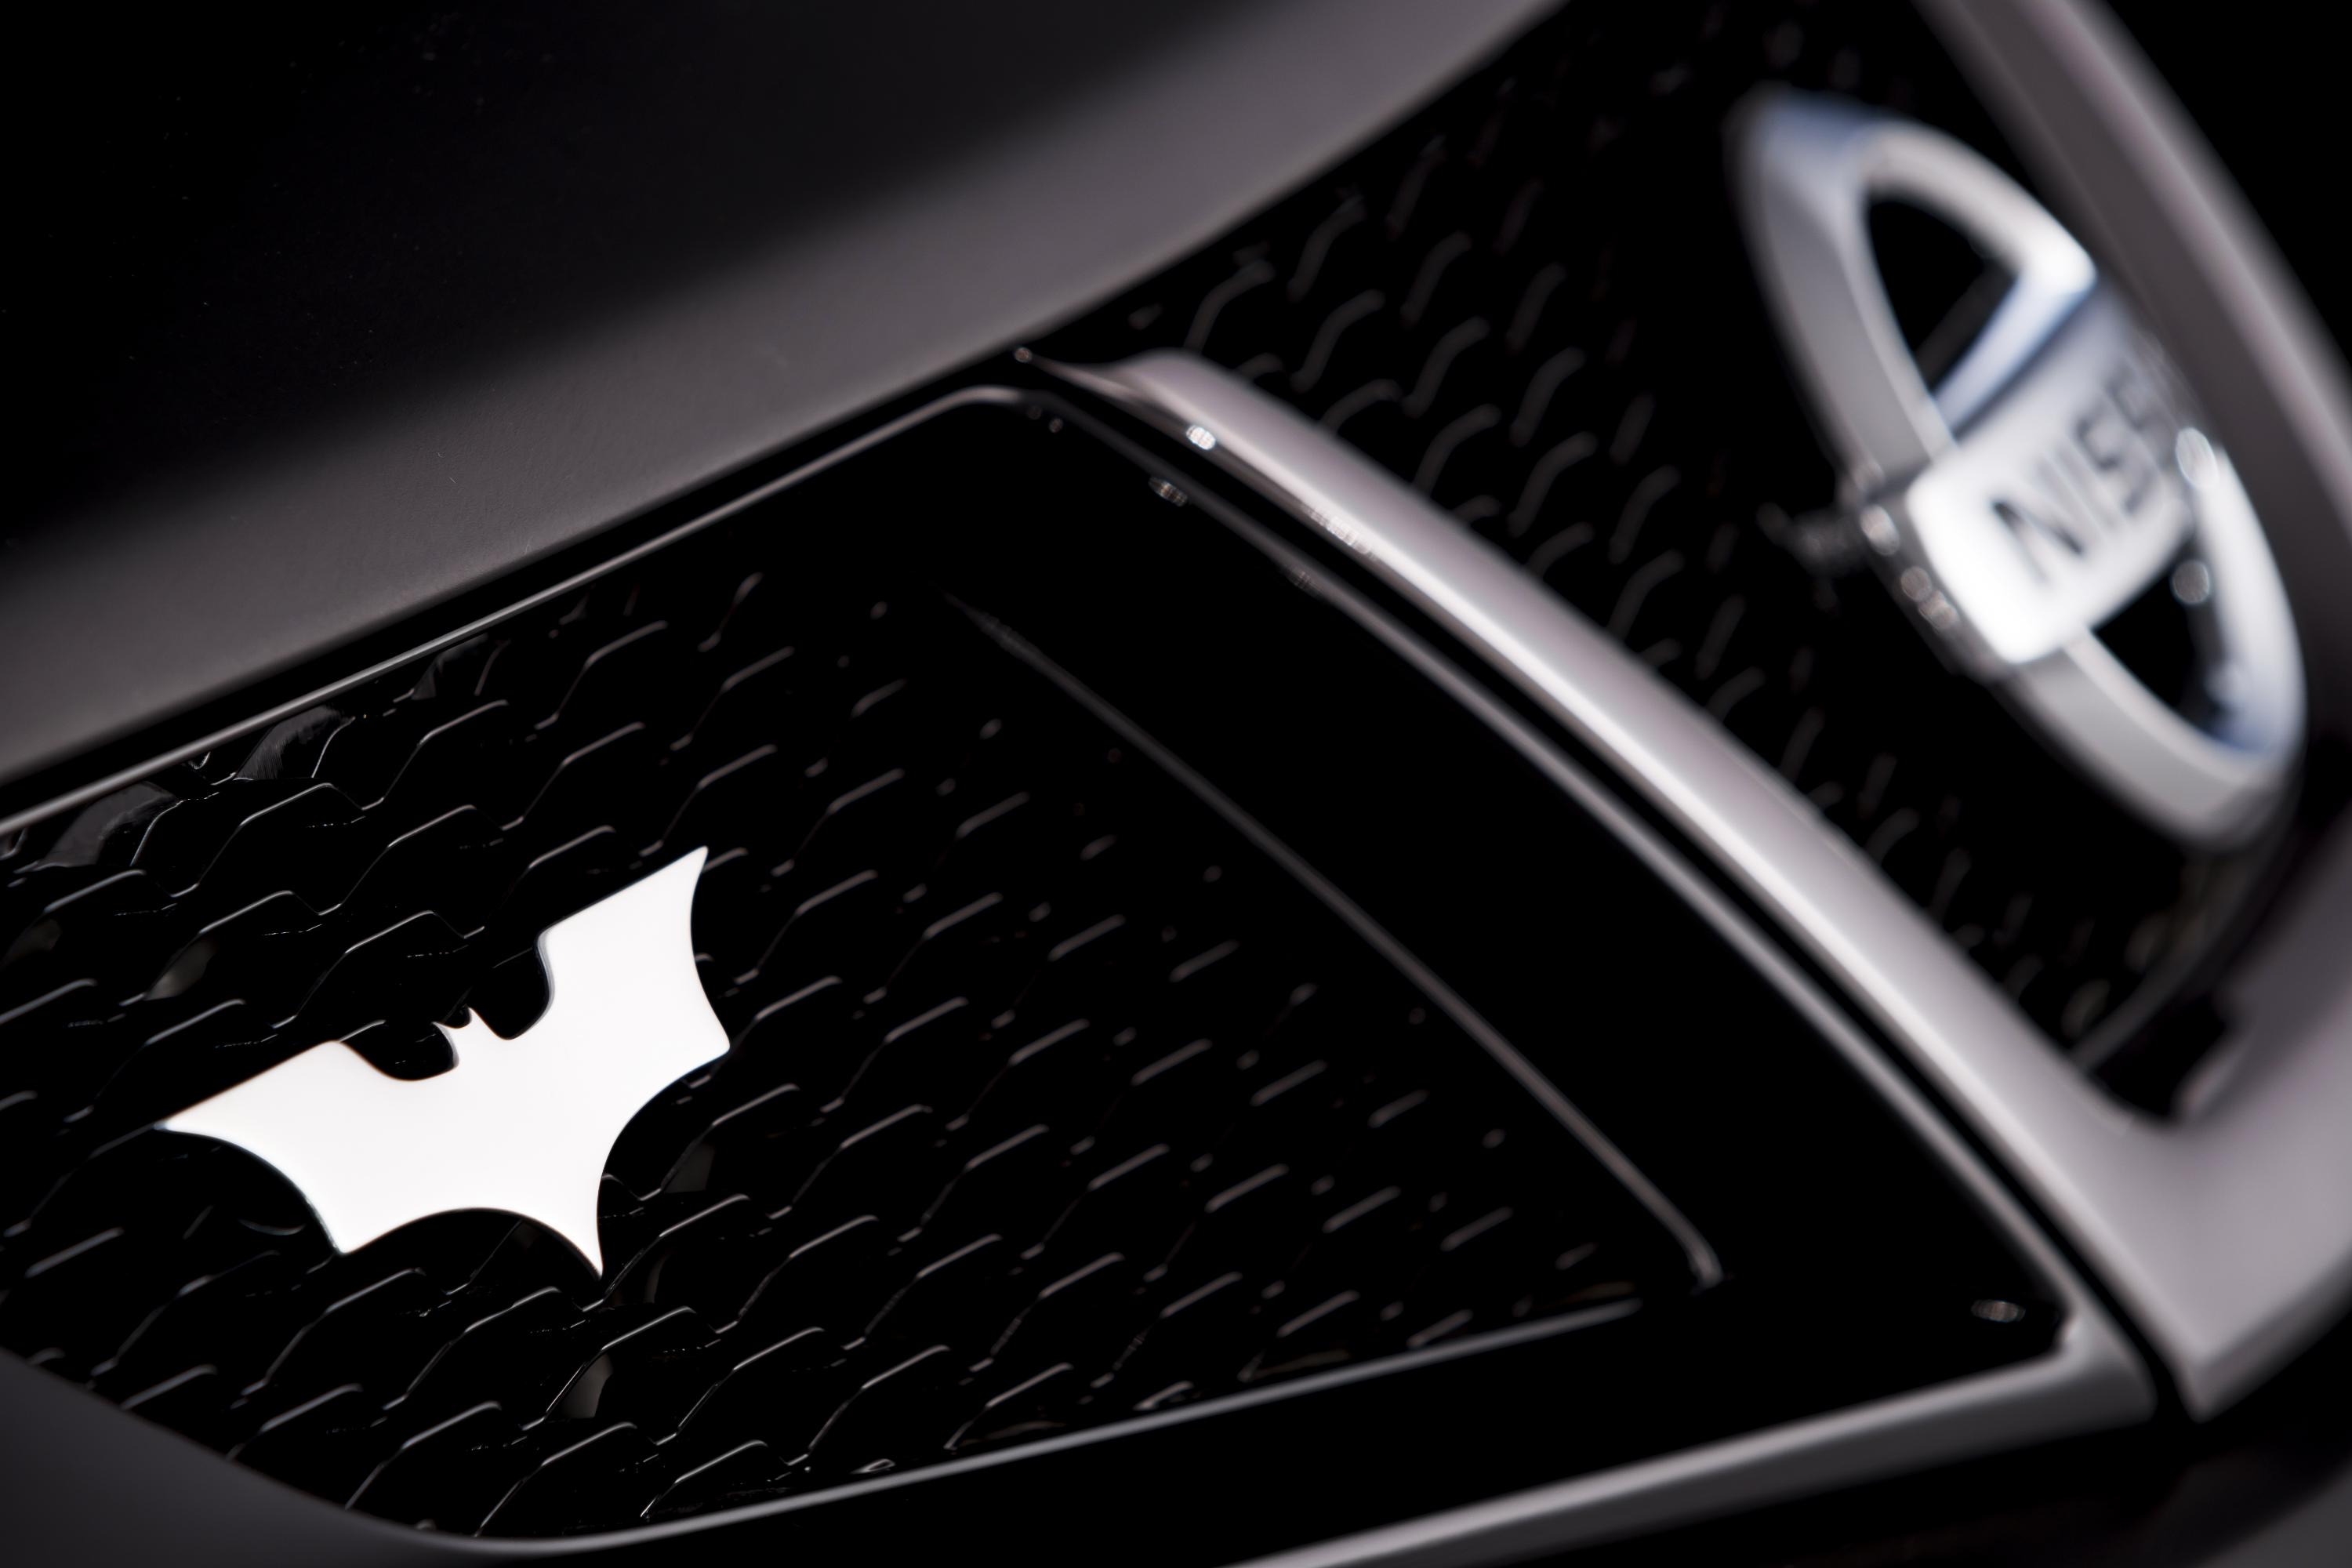 The Dark Knight Rises Nissan Juke Nismo